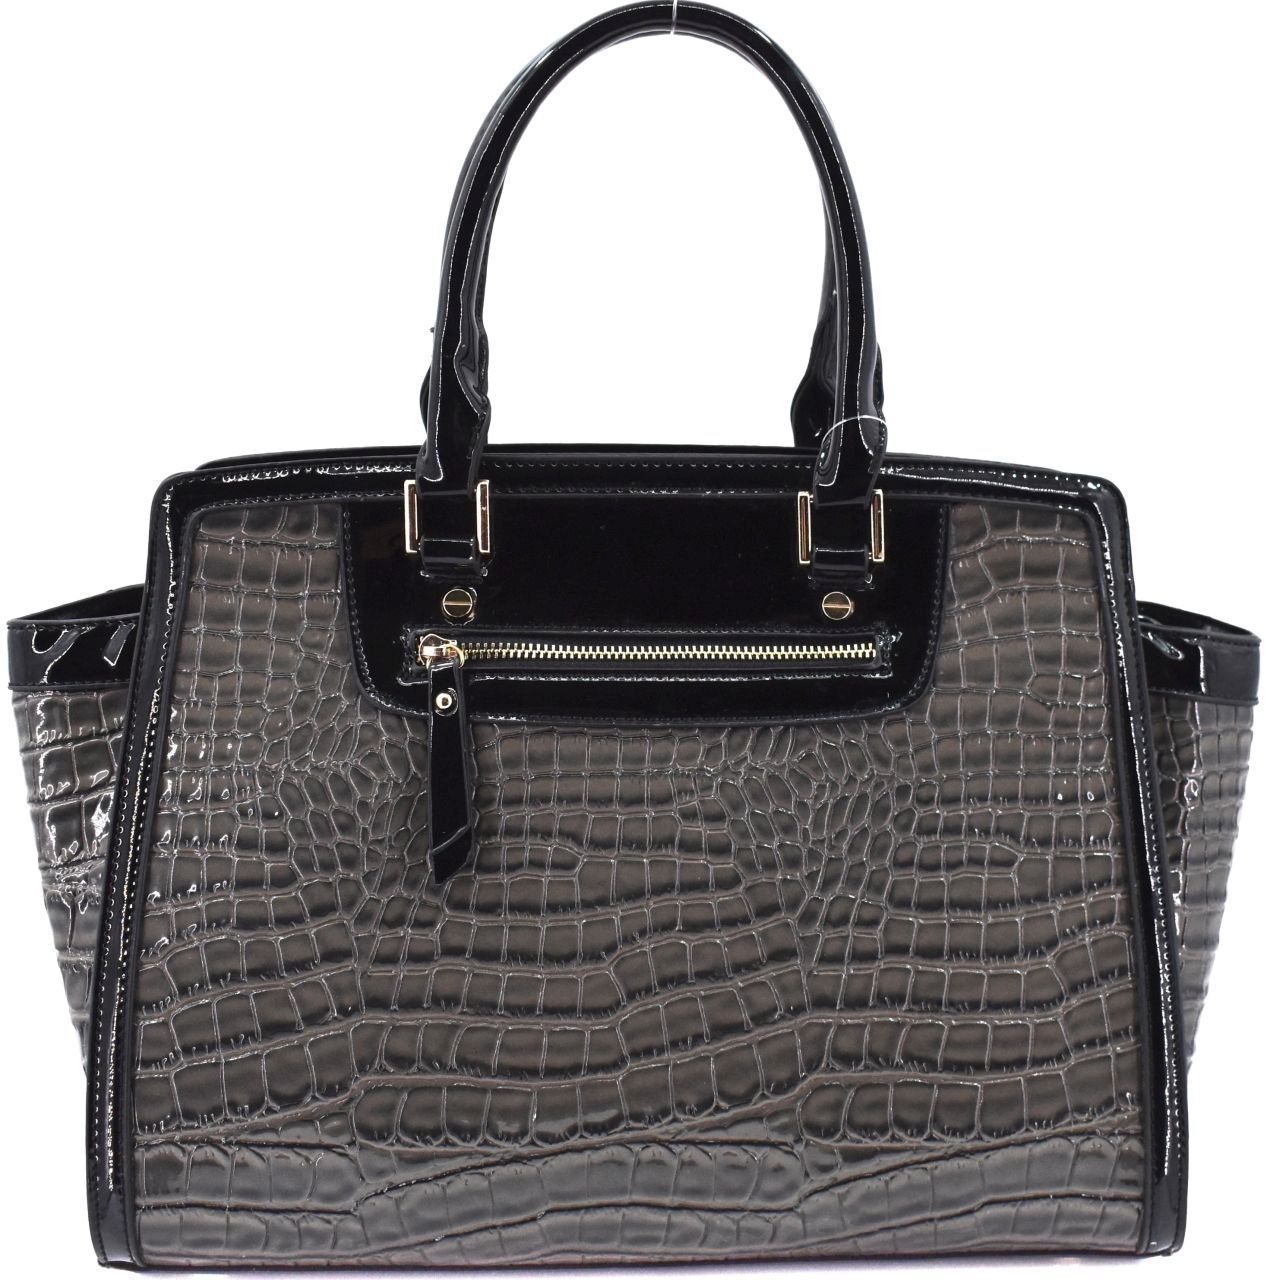 Luxusní dámská lakovaná kabelka - šedá